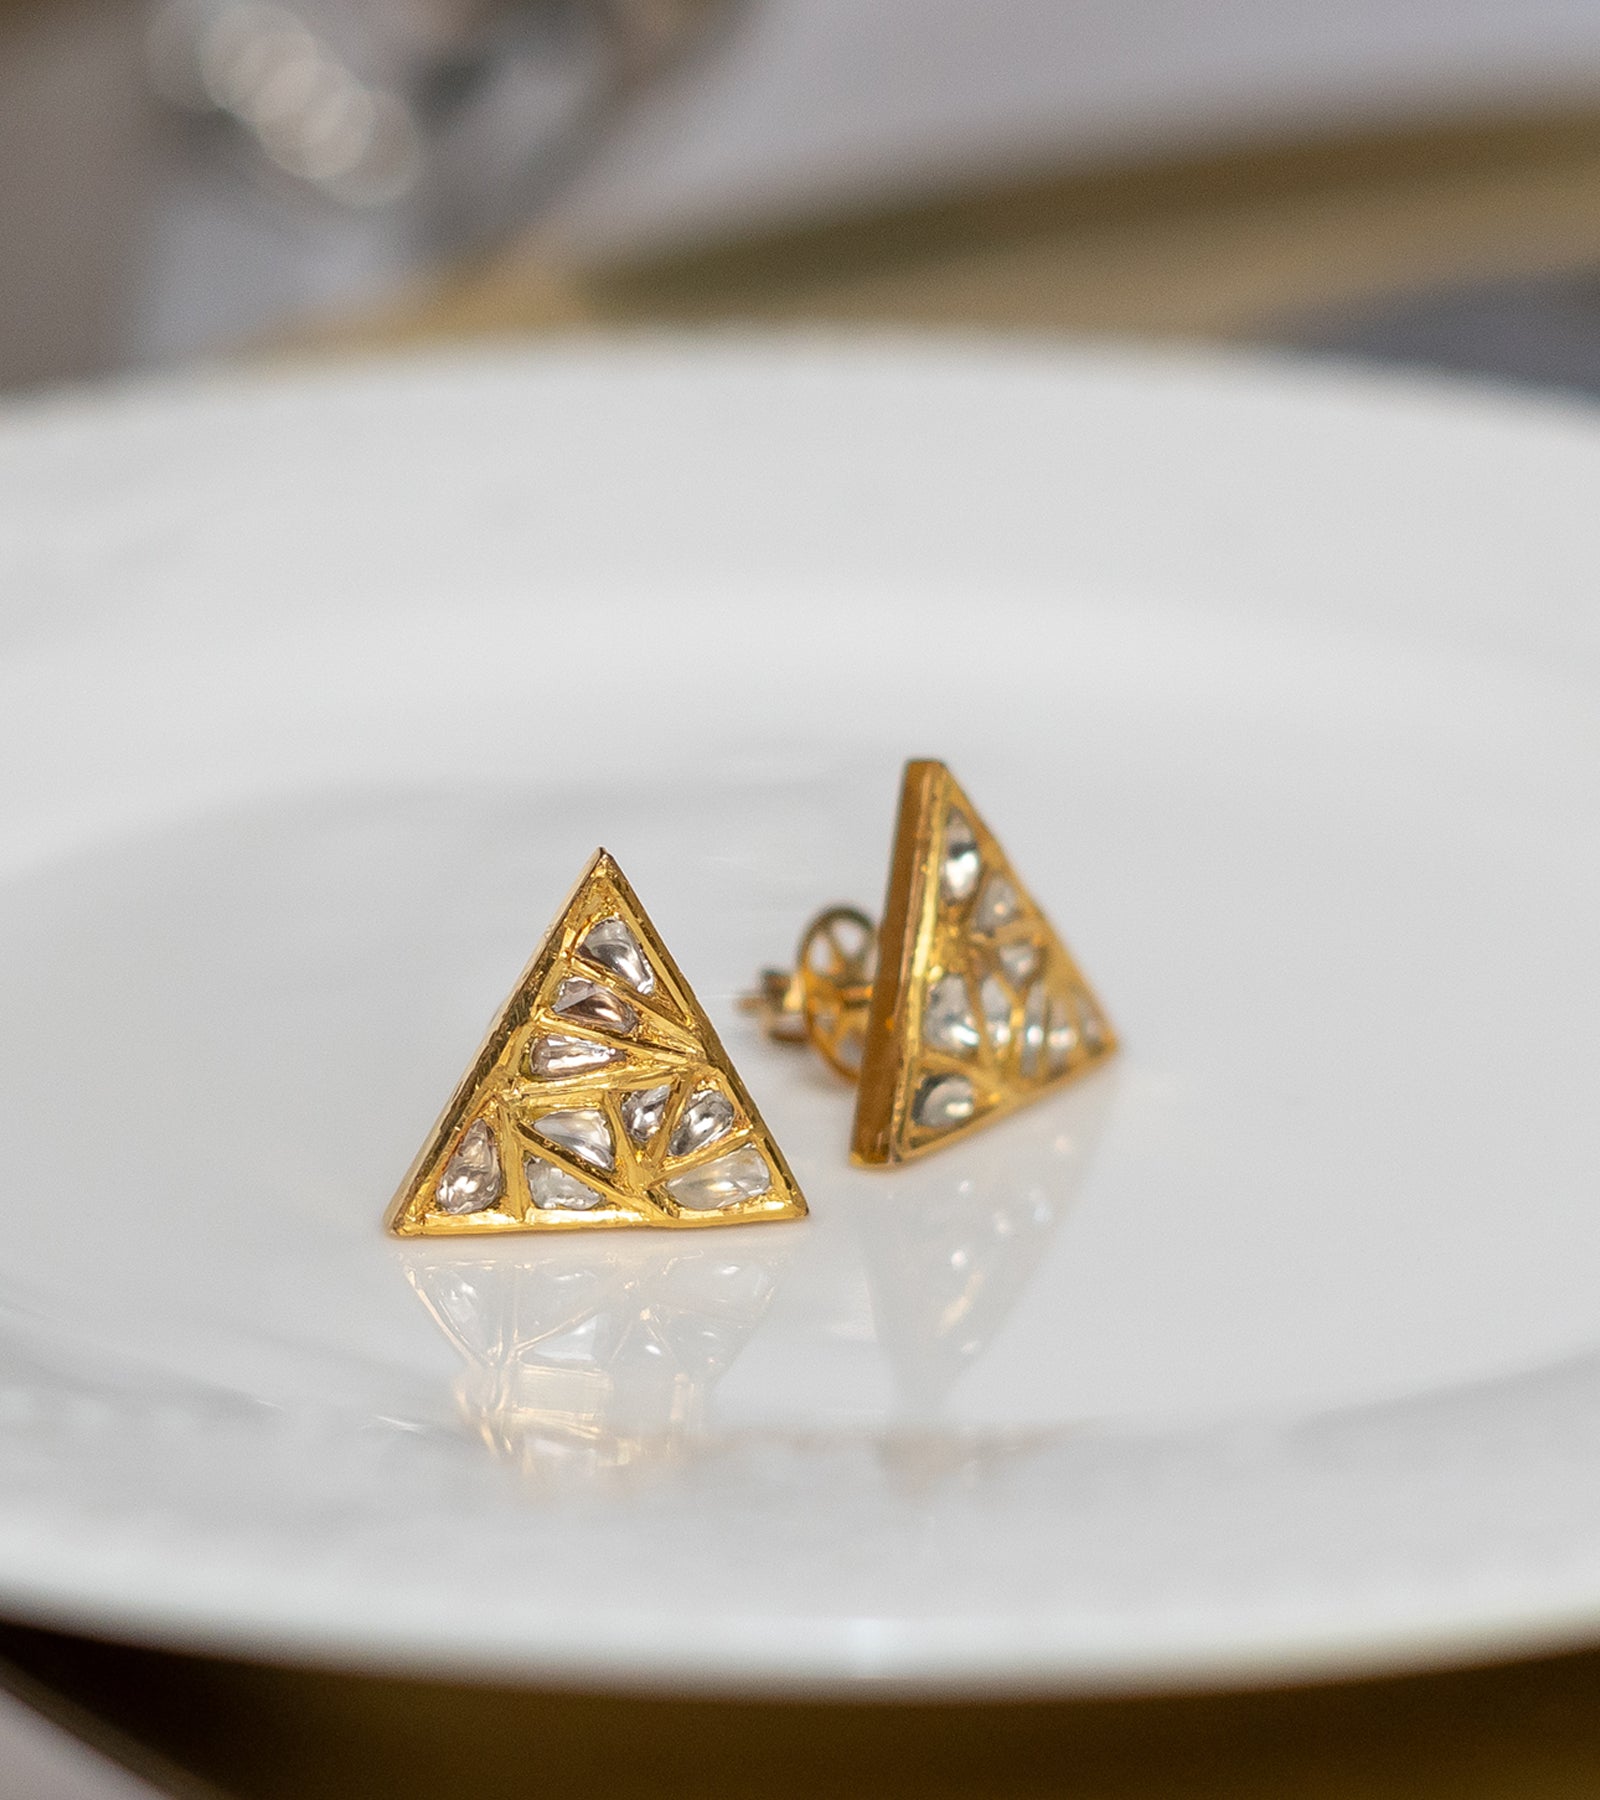 Polki Gold Earrings by UNCUT Jewelry